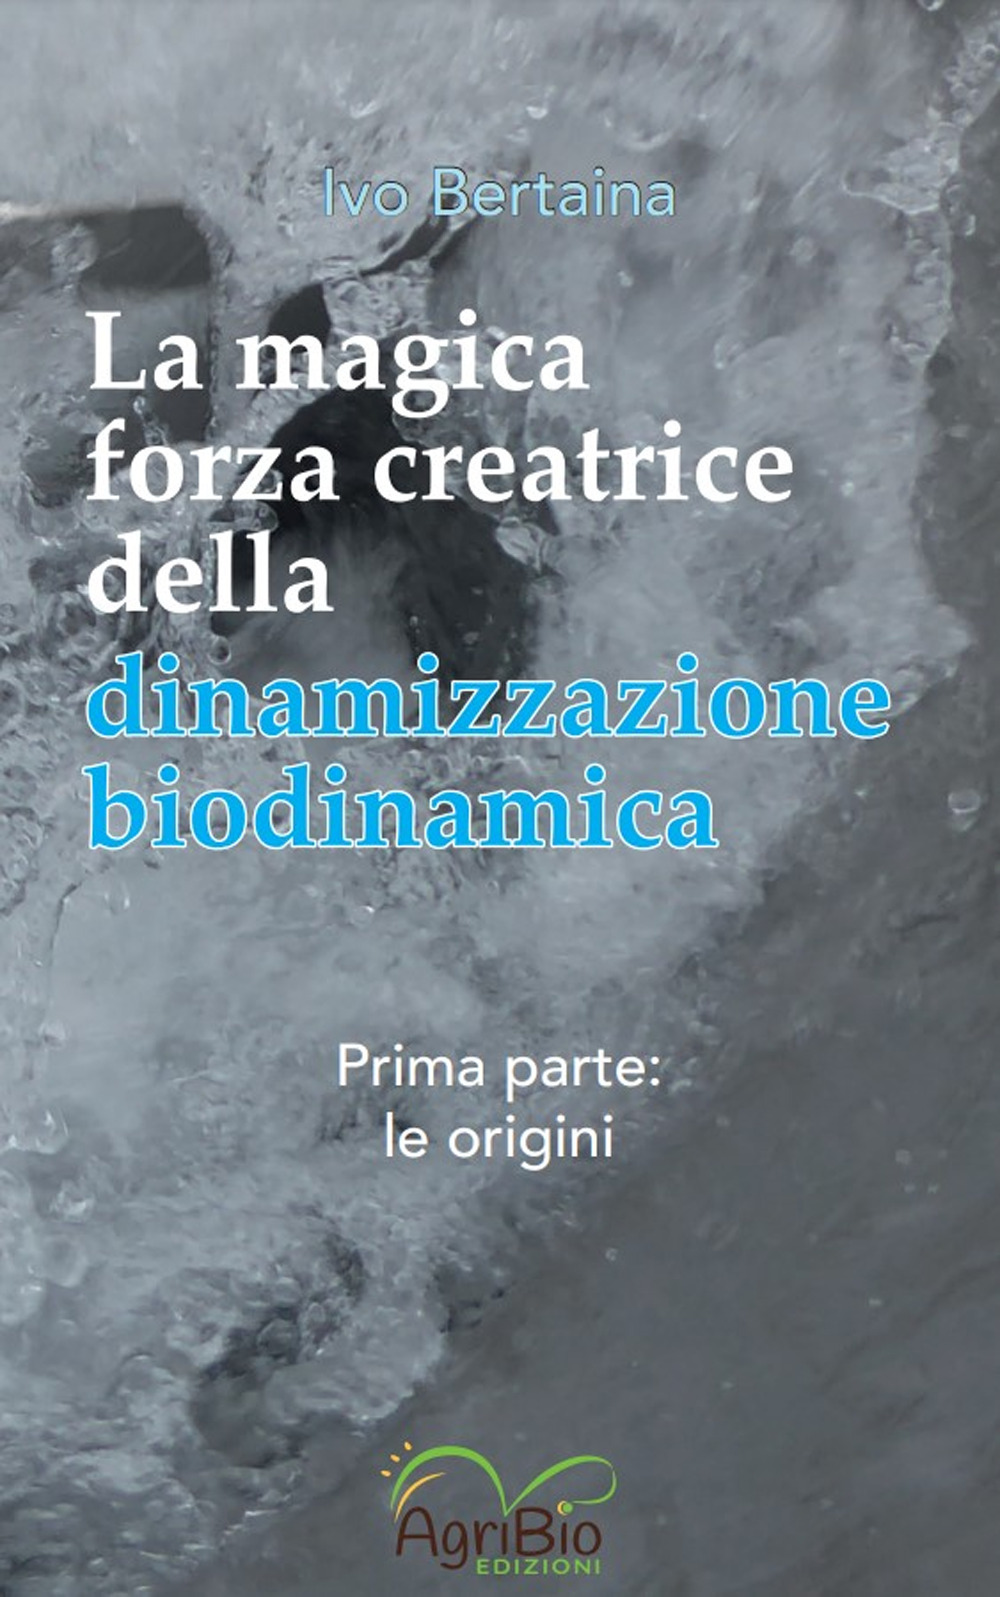 La magica forza creatrice della dinamizzazione biodinamica. Vol. 1: Le origini